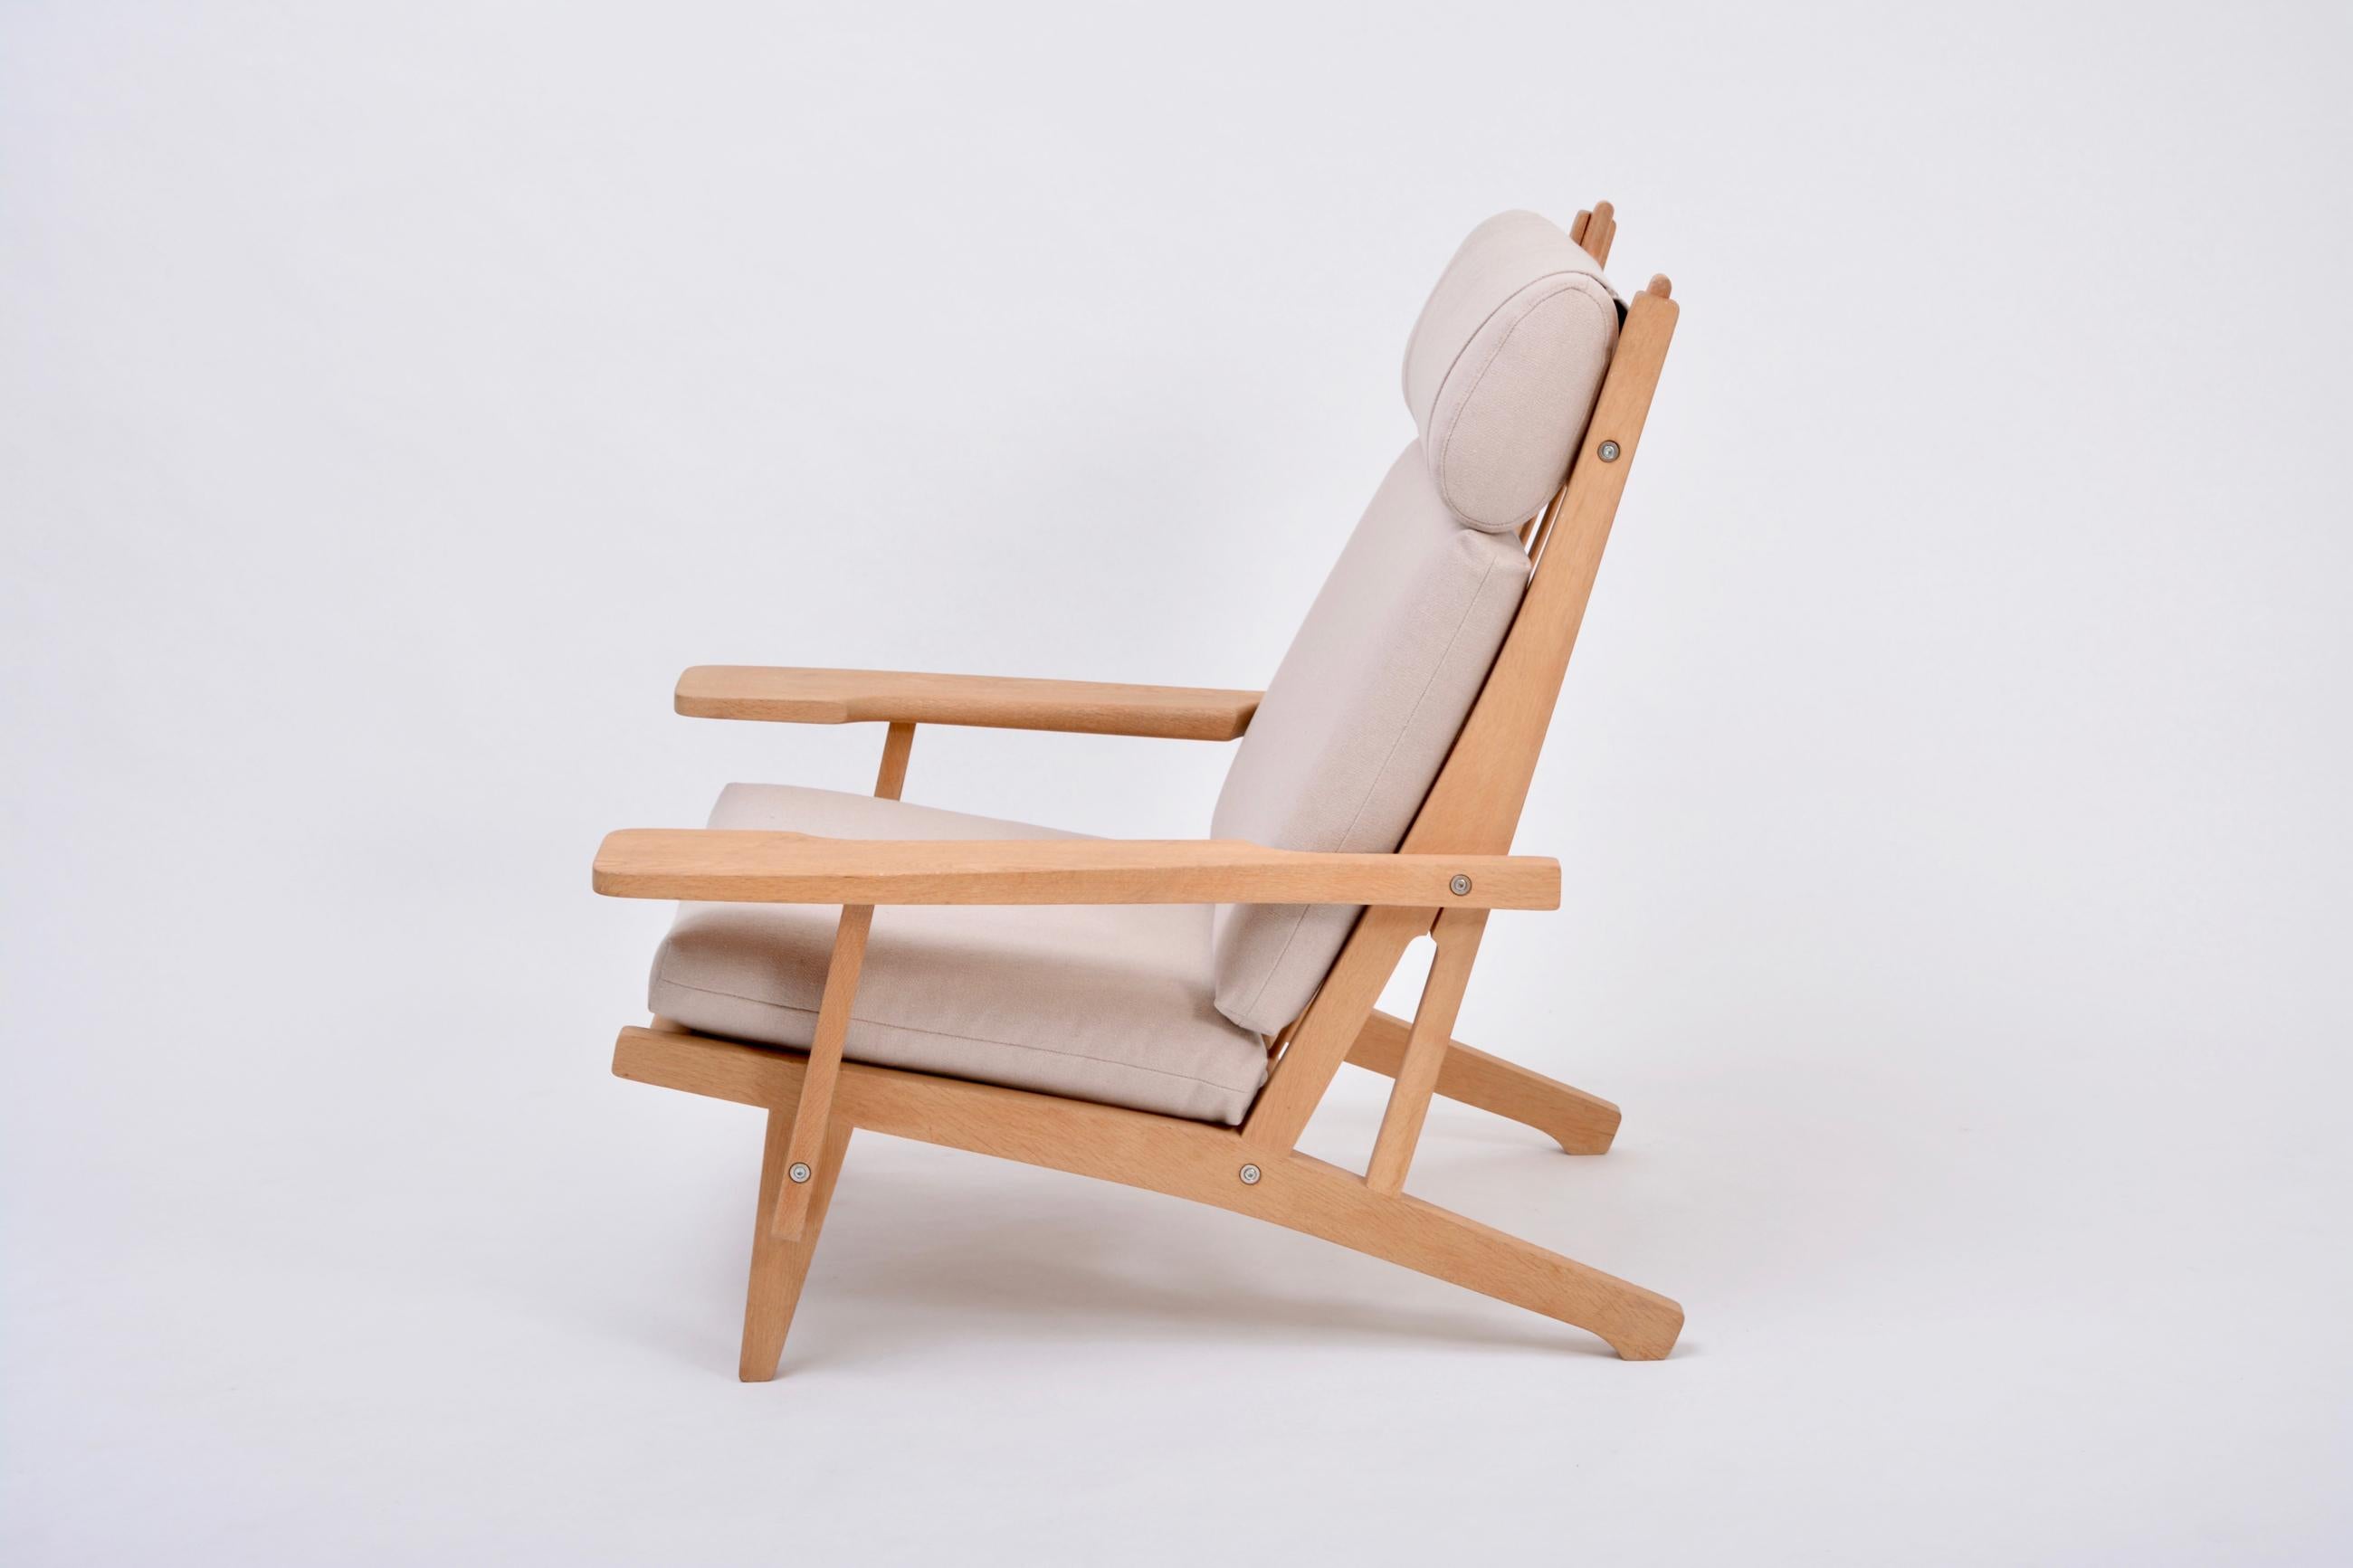 Dänischer Sessel der Jahrhundertmitte GE 375 von Hans J. Wegner für GETAMA

Dieser Sessel ist eine Version des Modells GE 375 mit Armlehnen und hoher Rückenlehne, das Hans J. Wegner 1969 für GETAMA entworfen hat. Das Gestell ist aus Eichenholz, die